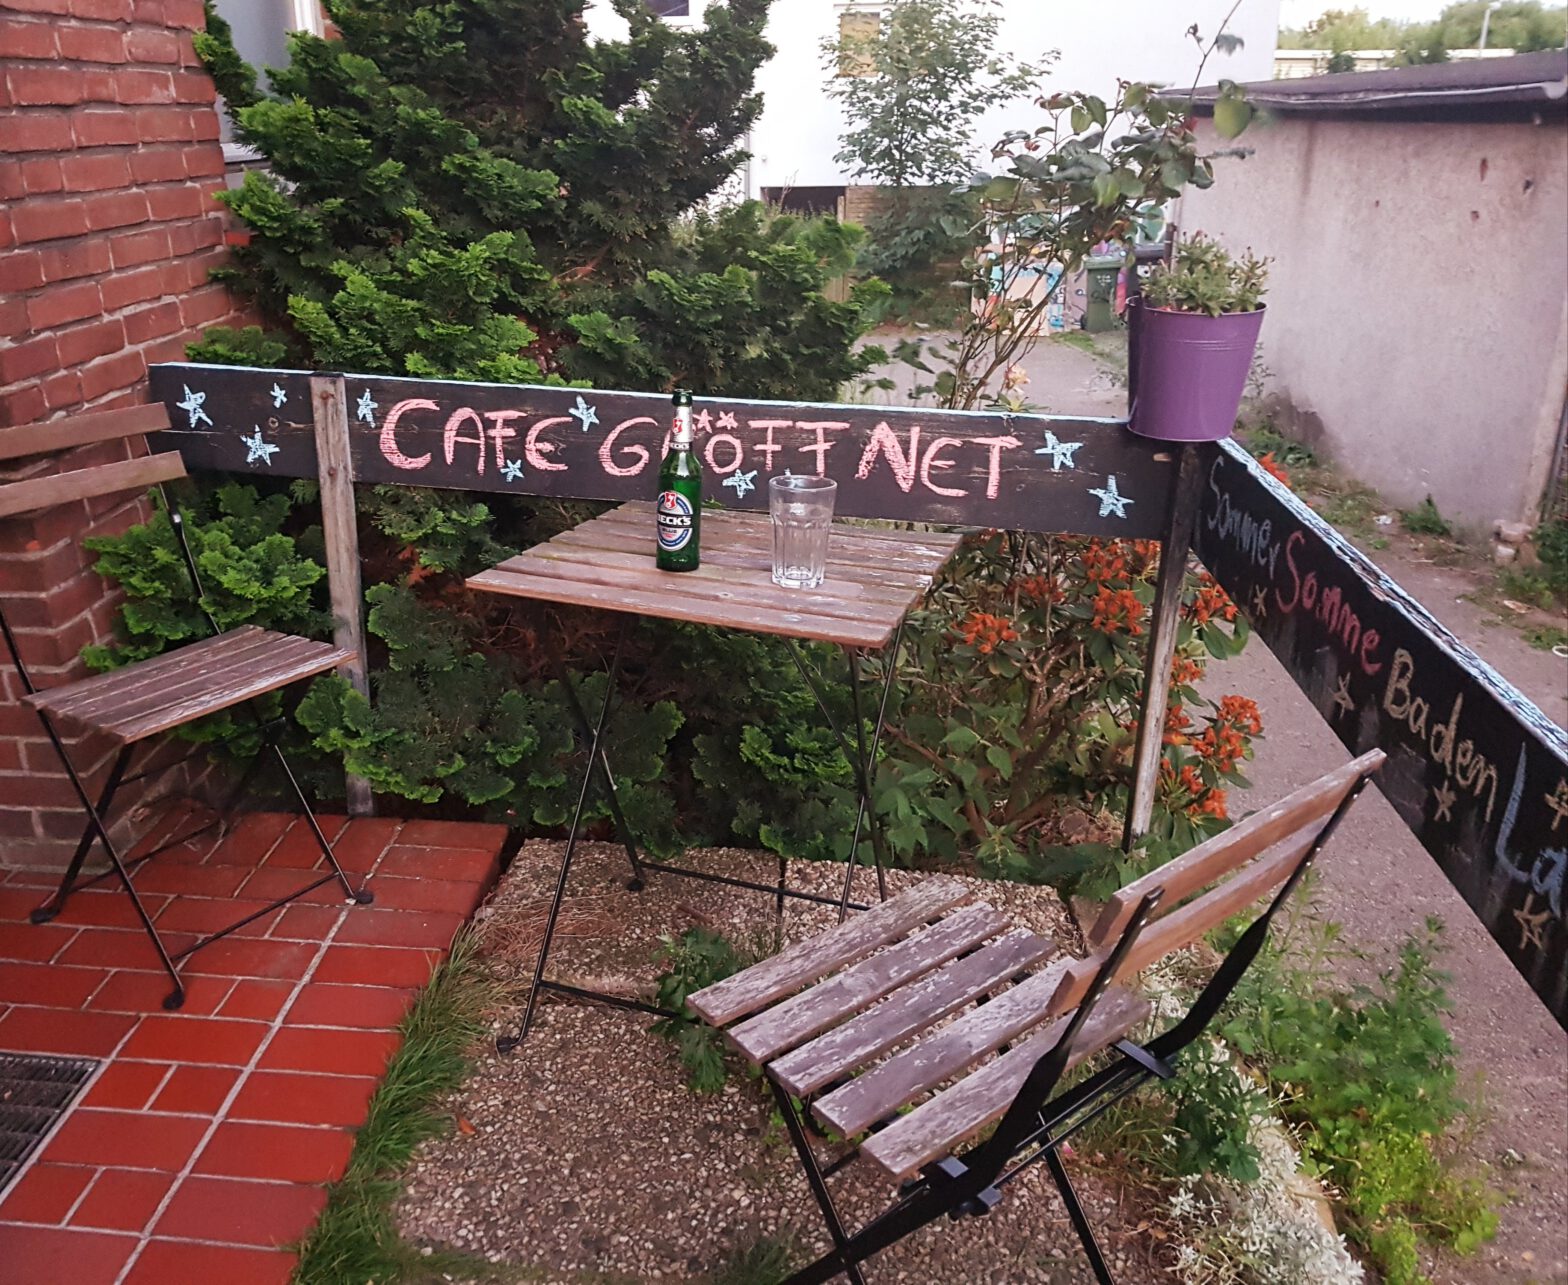 Tisch und zwei Stühle vor Haustür. An Holzbrett steht mit Kreide geschrieben: "Cafe geöffnet"